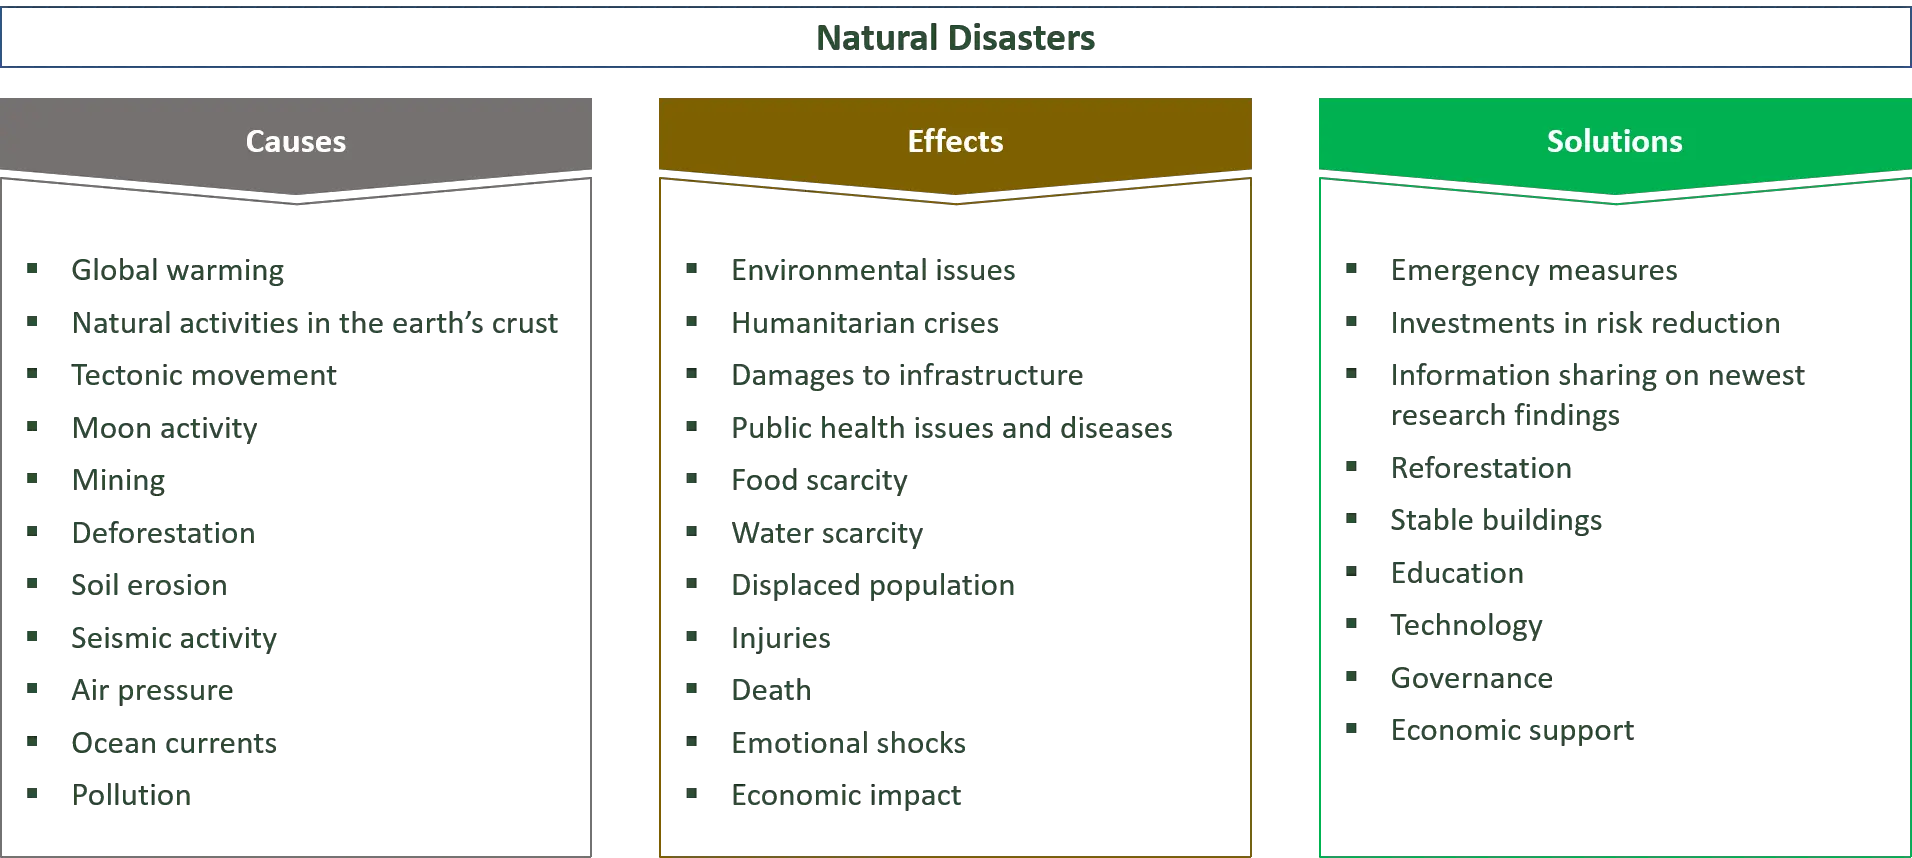  ursachen, Auswirkungen und Lösungen für Naturkatastrophen